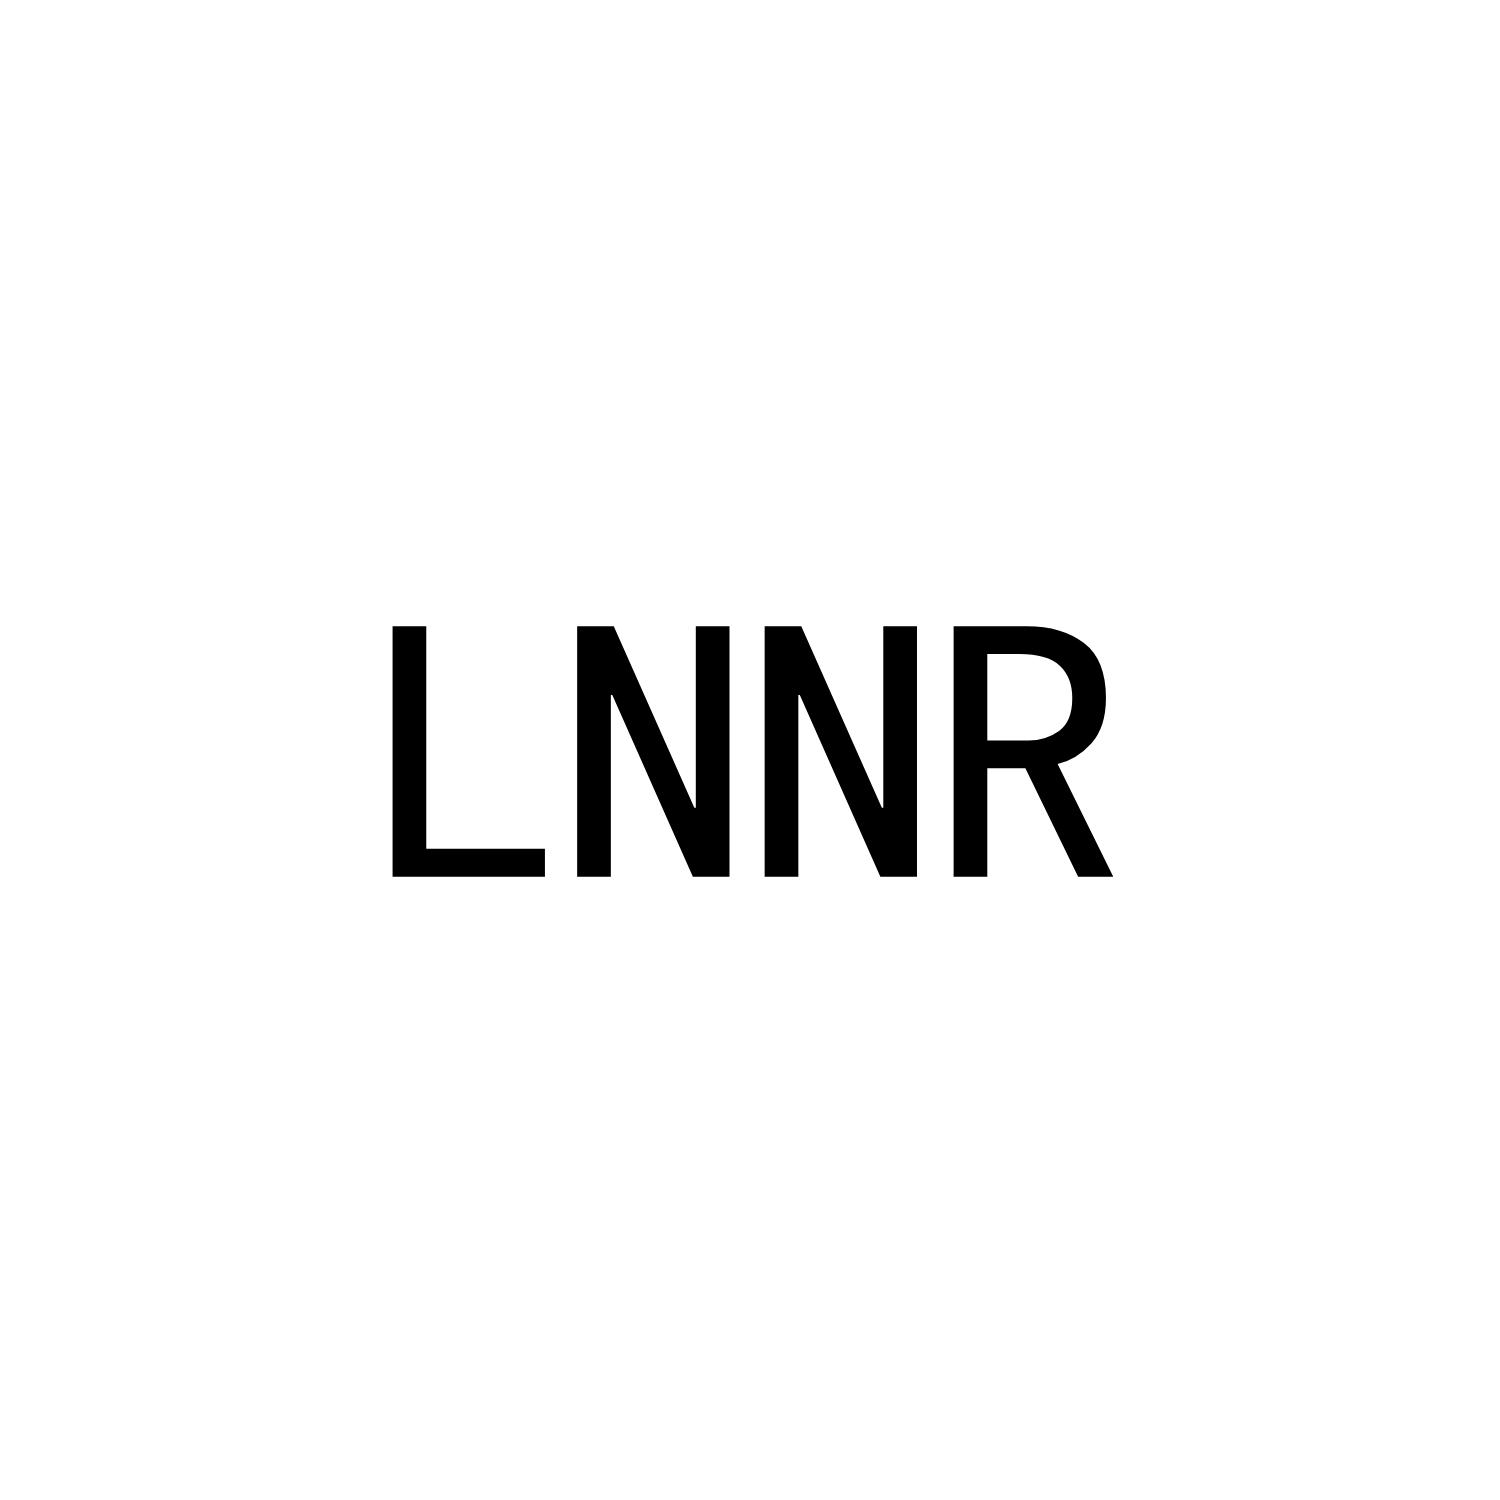 LNNR